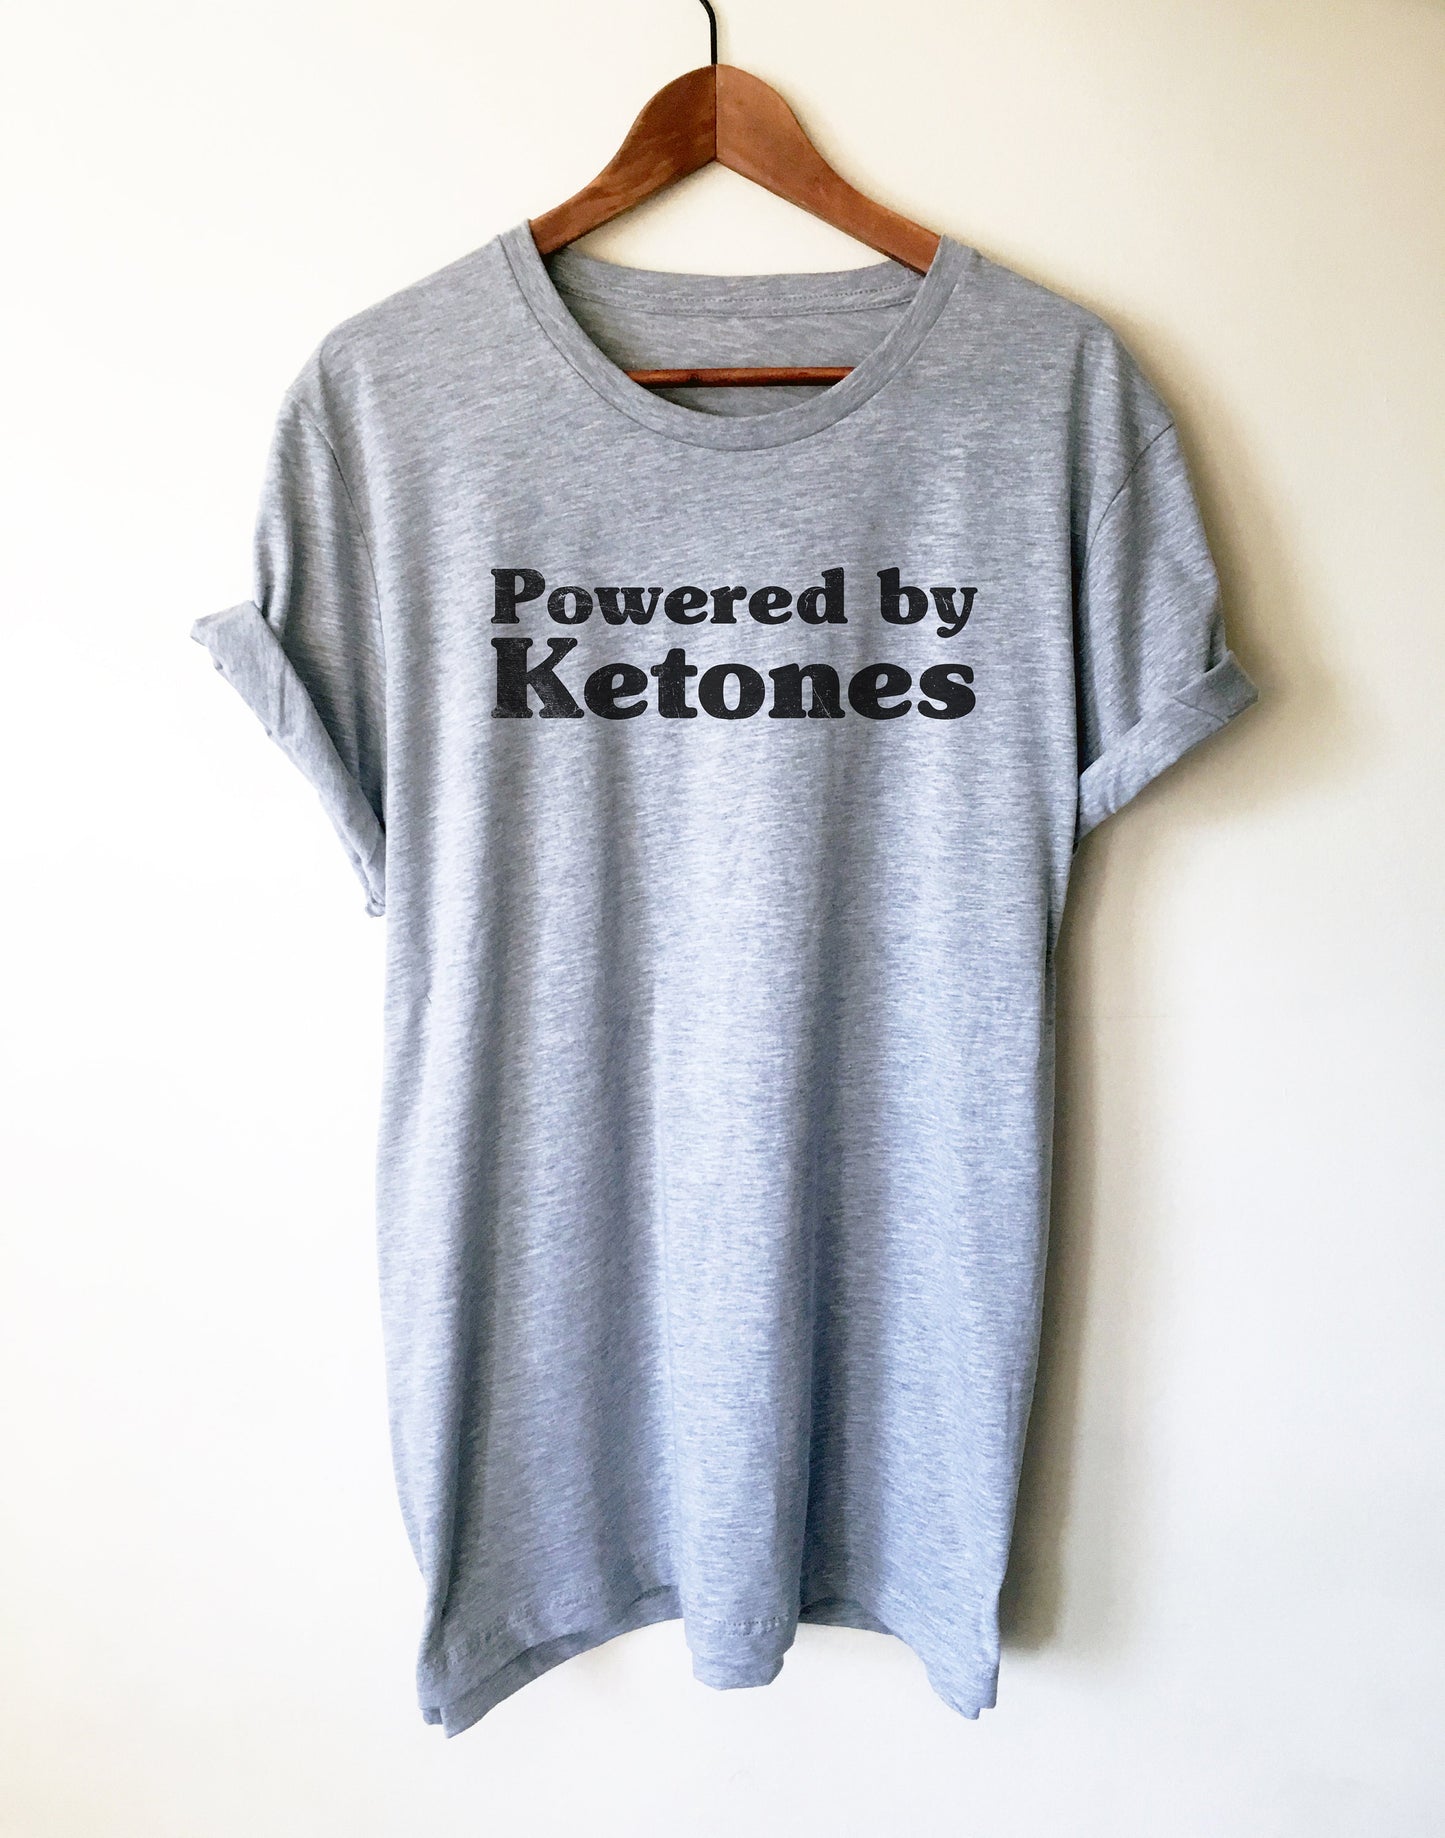 Powered By Ketones Unisex Shirt - Keto T Shirt, Keto, Ketones, Ketogenic Diet, Ketosis, Keto AF, Low Carb, Funny Workout Shirt